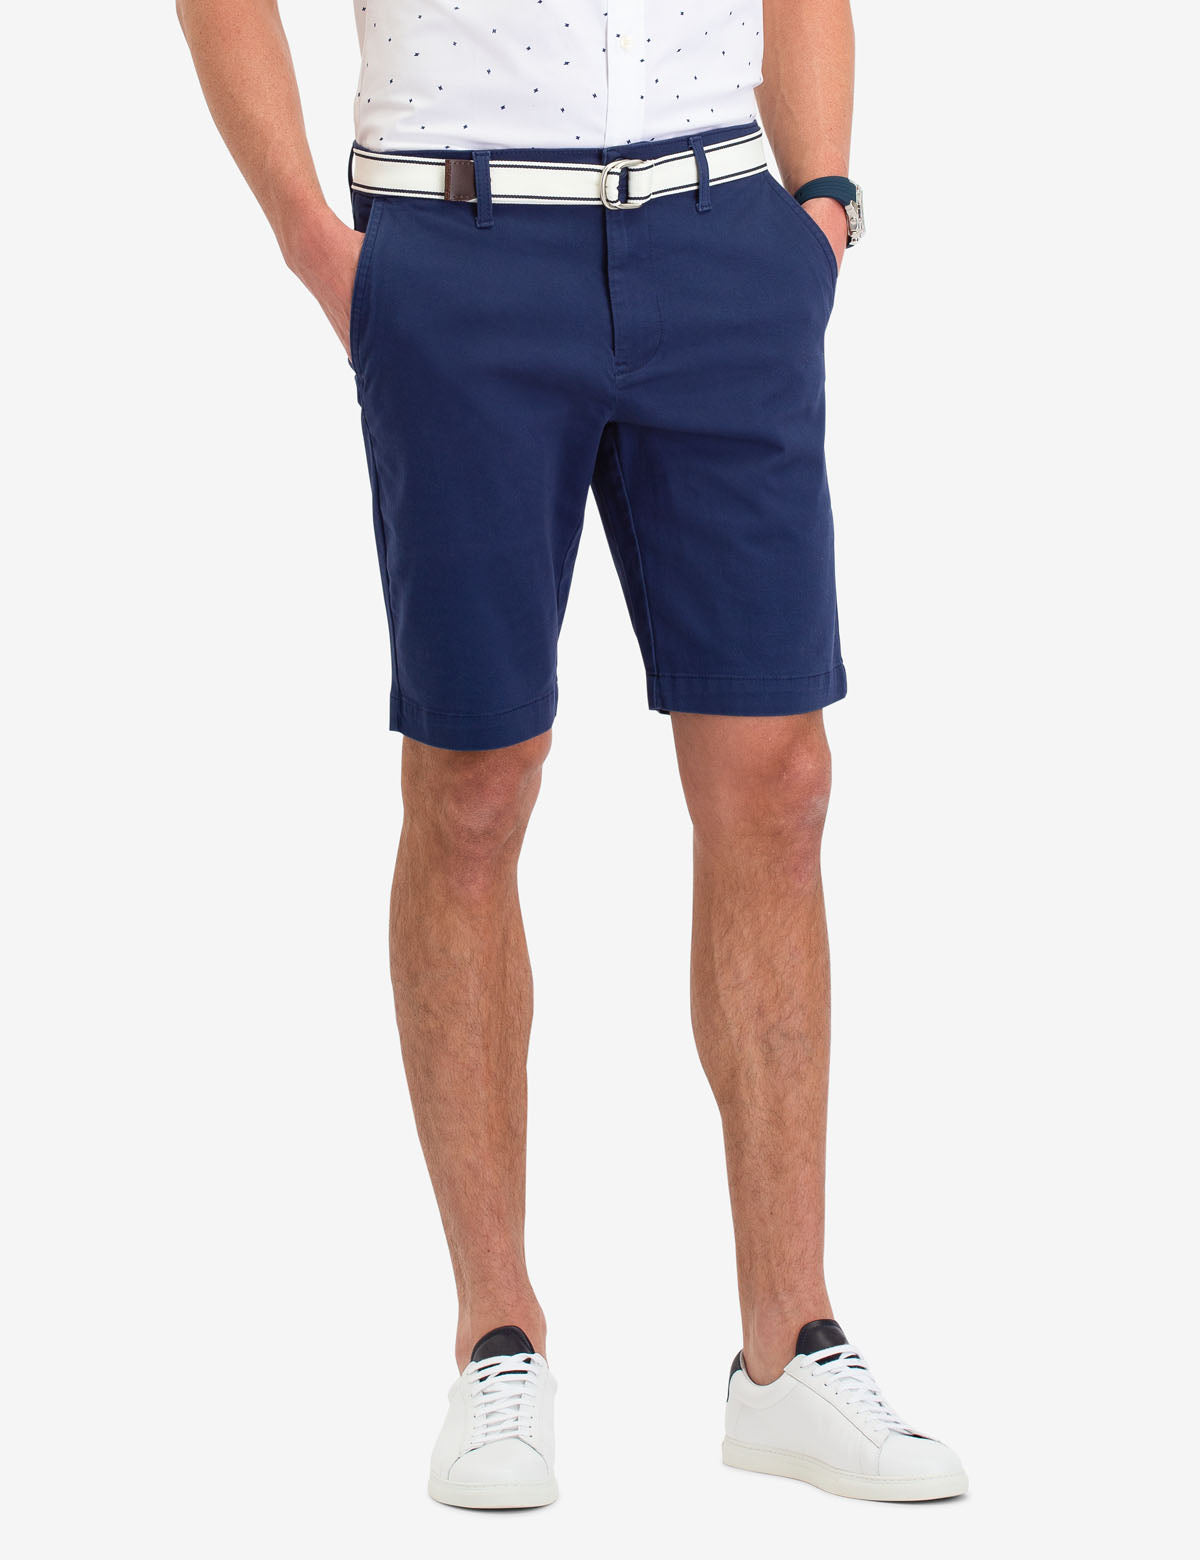 polo shorts price